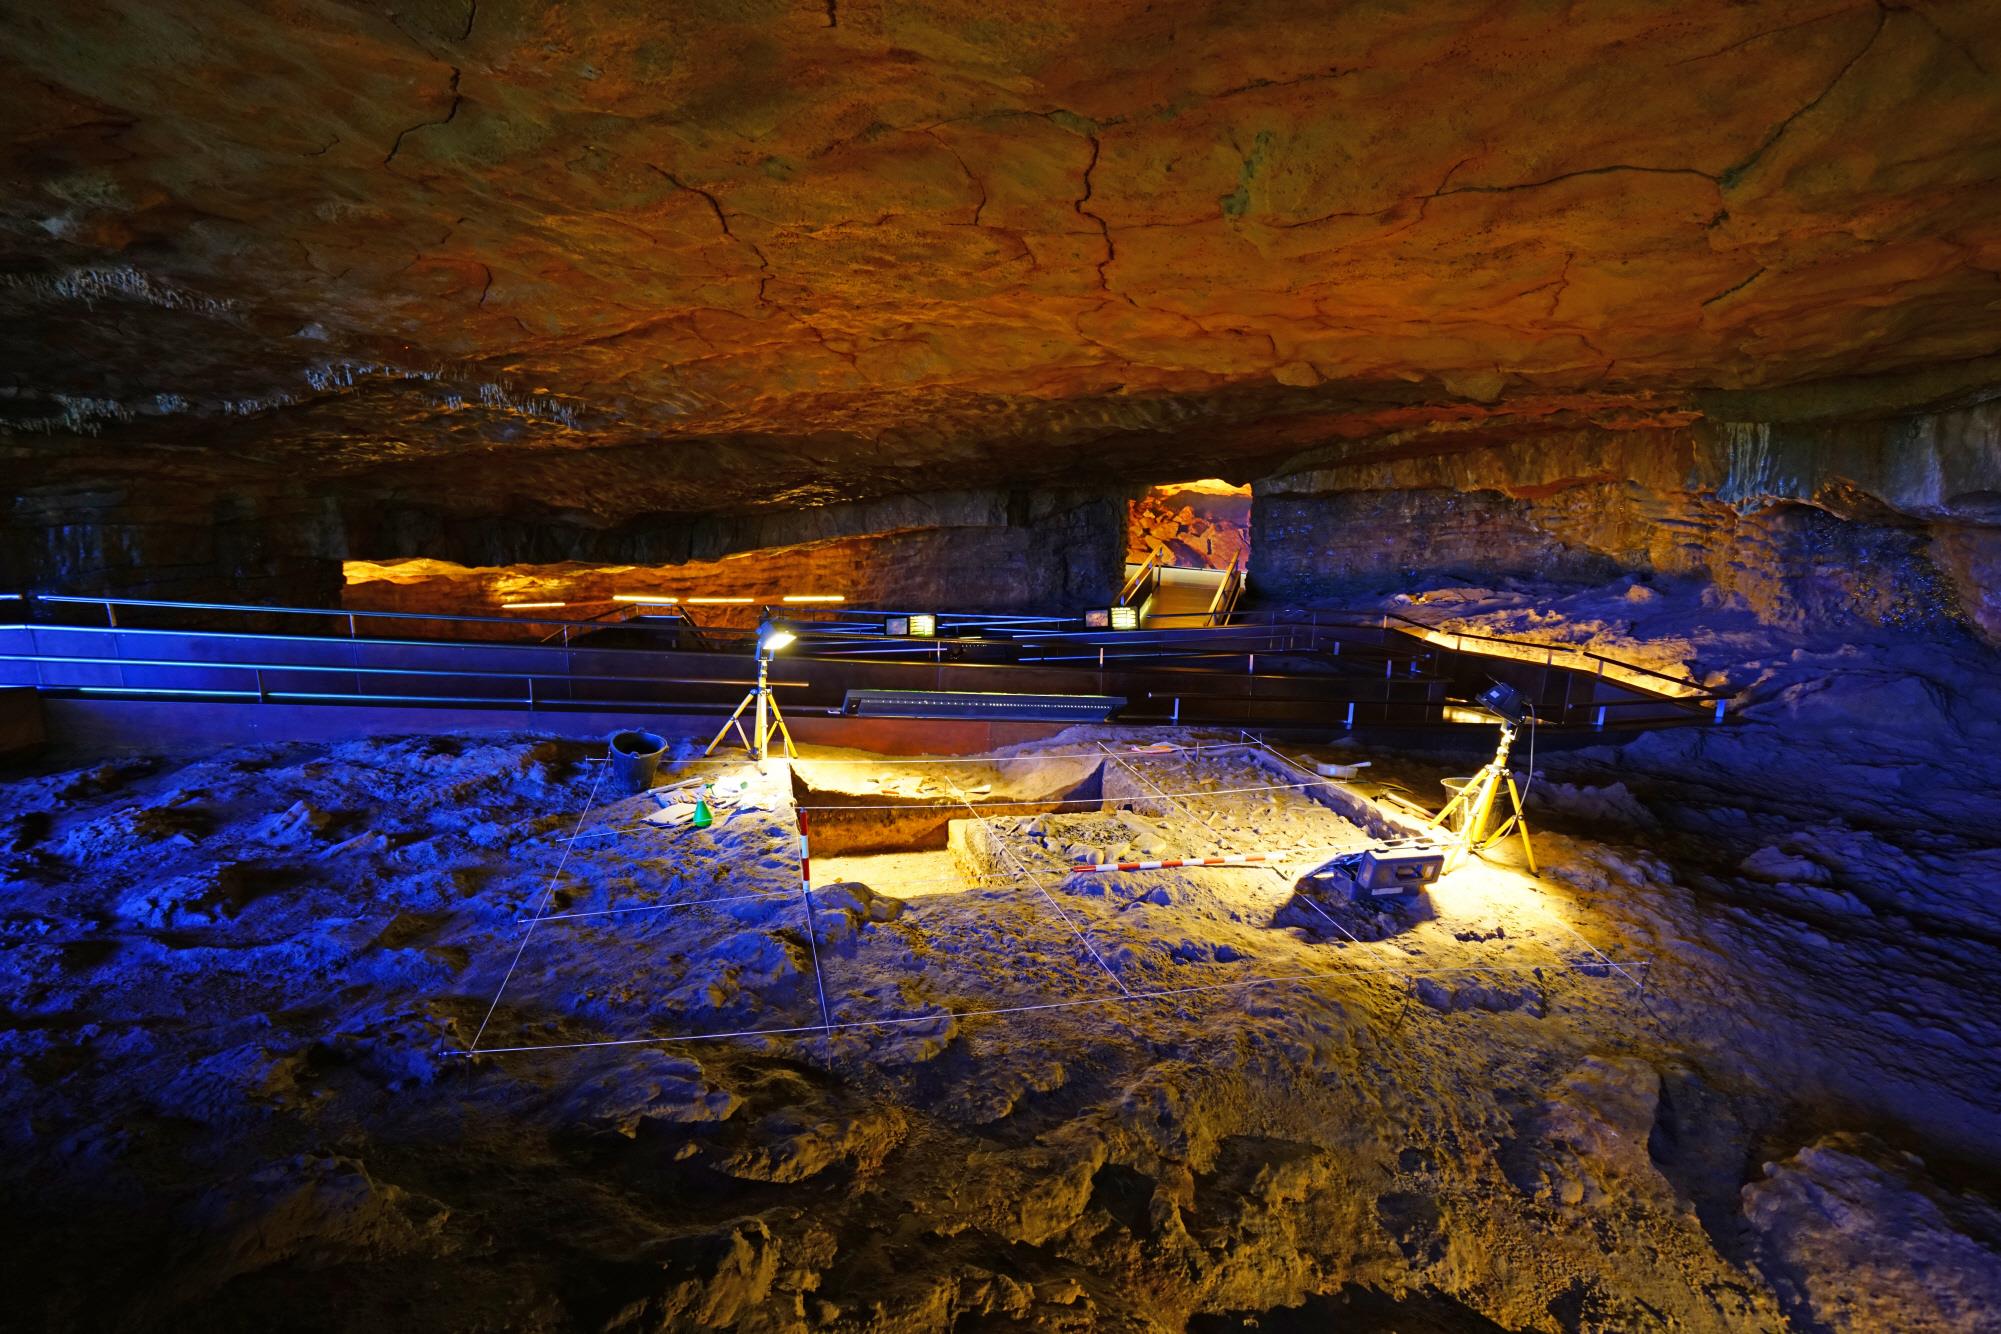 알타미라동굴 박물관  cueva de Altamira museum